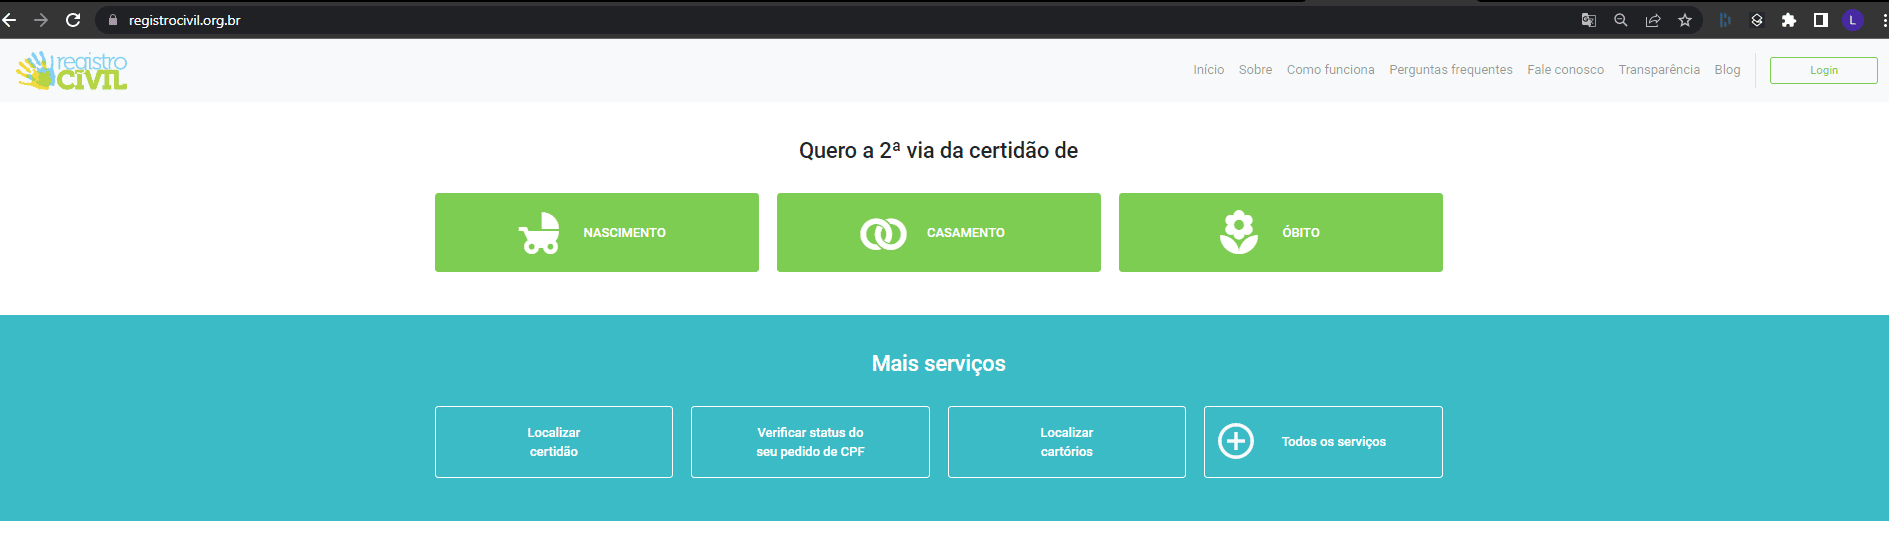 RegistroCivil Website in Brazil